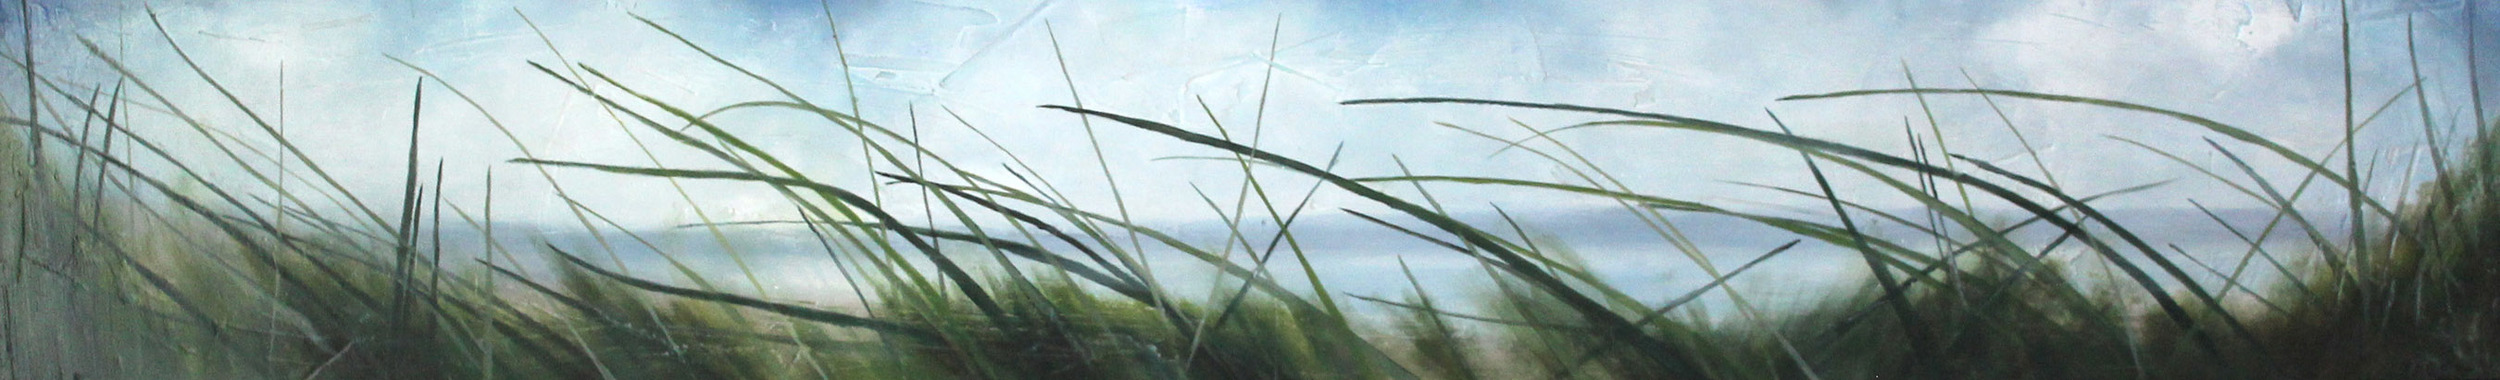 sea grass #16, 10''x60'' cropped resized, 300dpi, 9''x1''.jpg